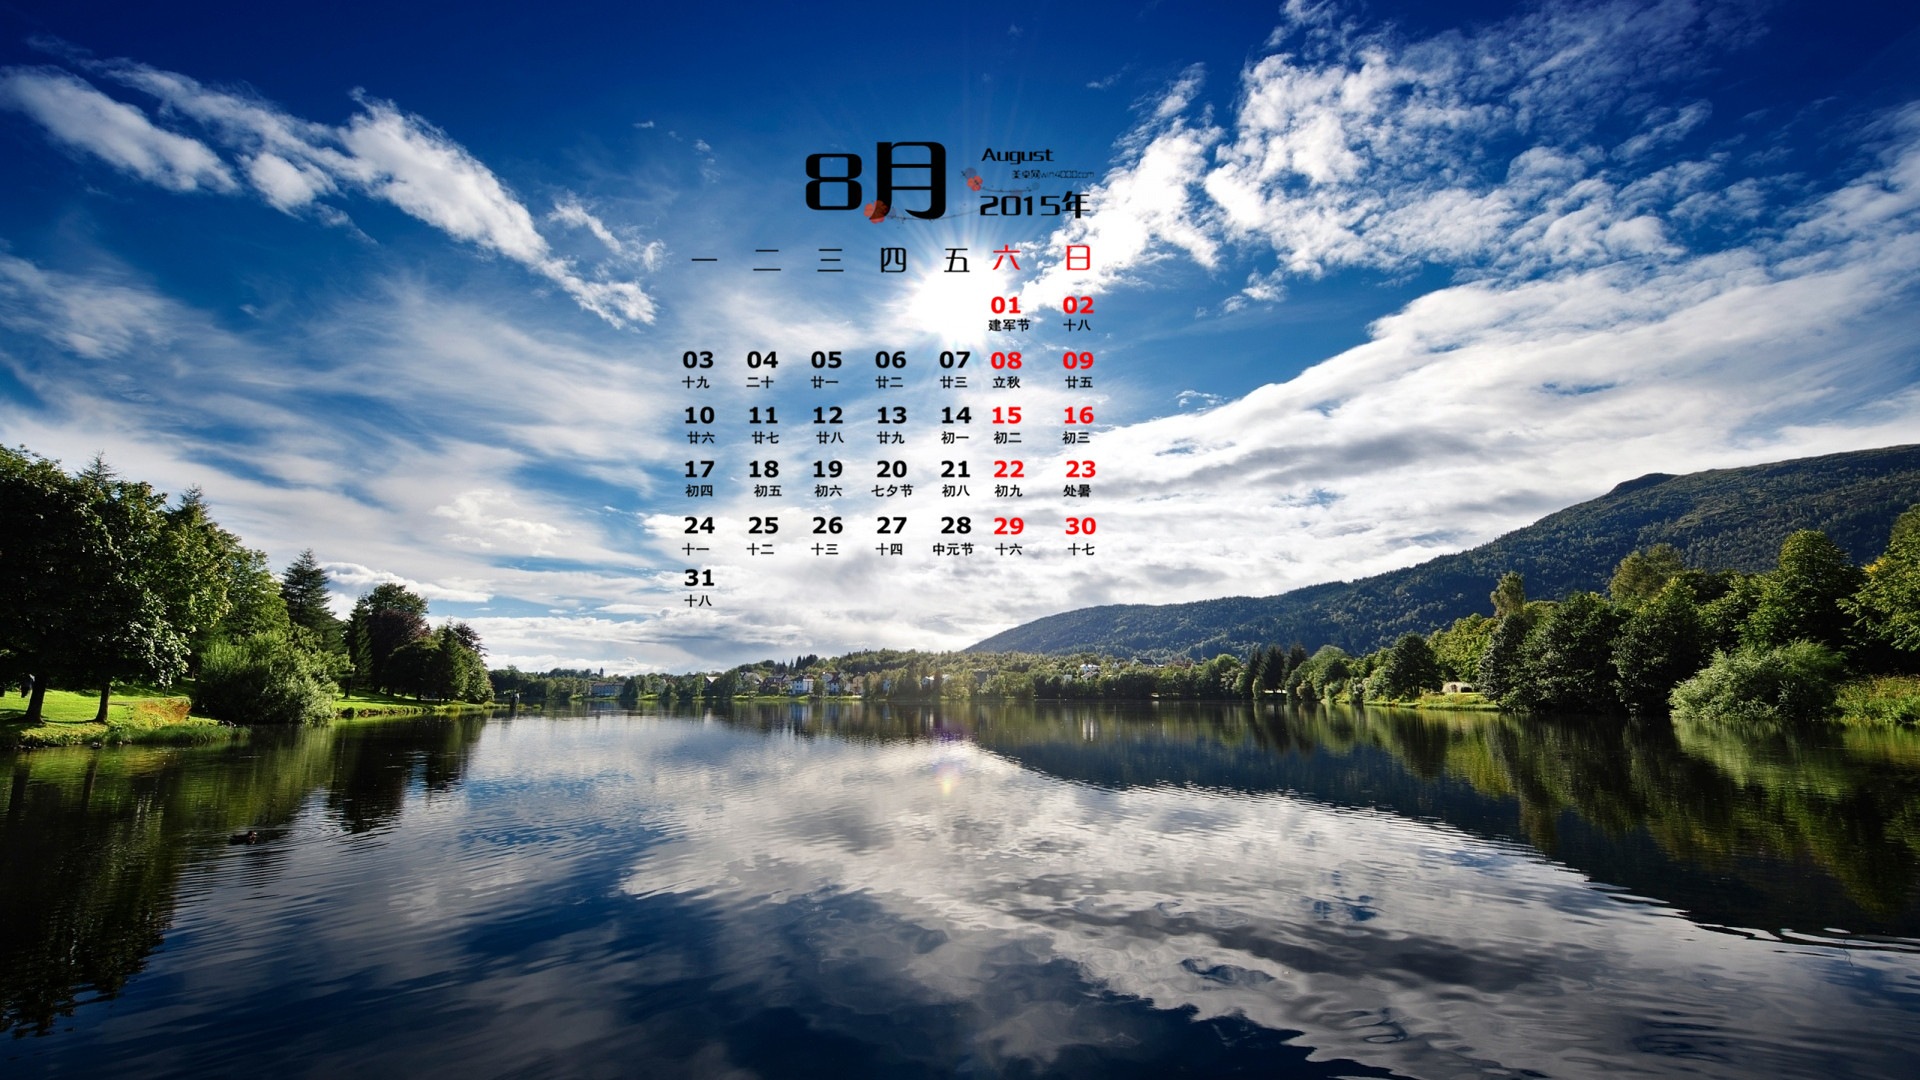 August 2015 calendar wallpaper (1) #10 - 1920x1080